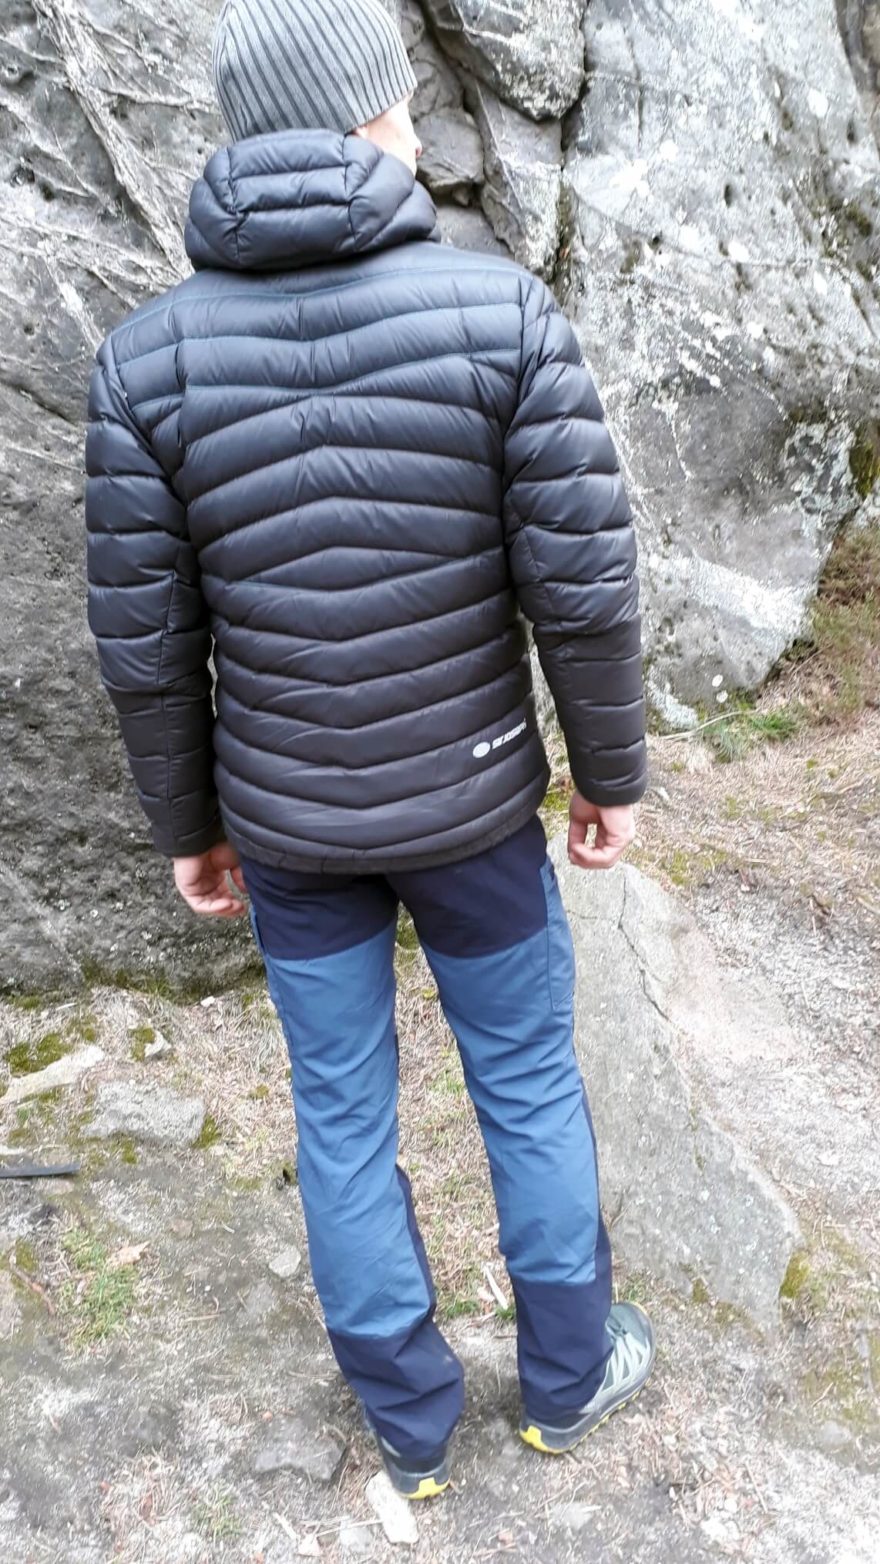 Pánské turistické kalhoty Forclaz MT 500 - tmavší díly jsou z pružného a odolného materiálu